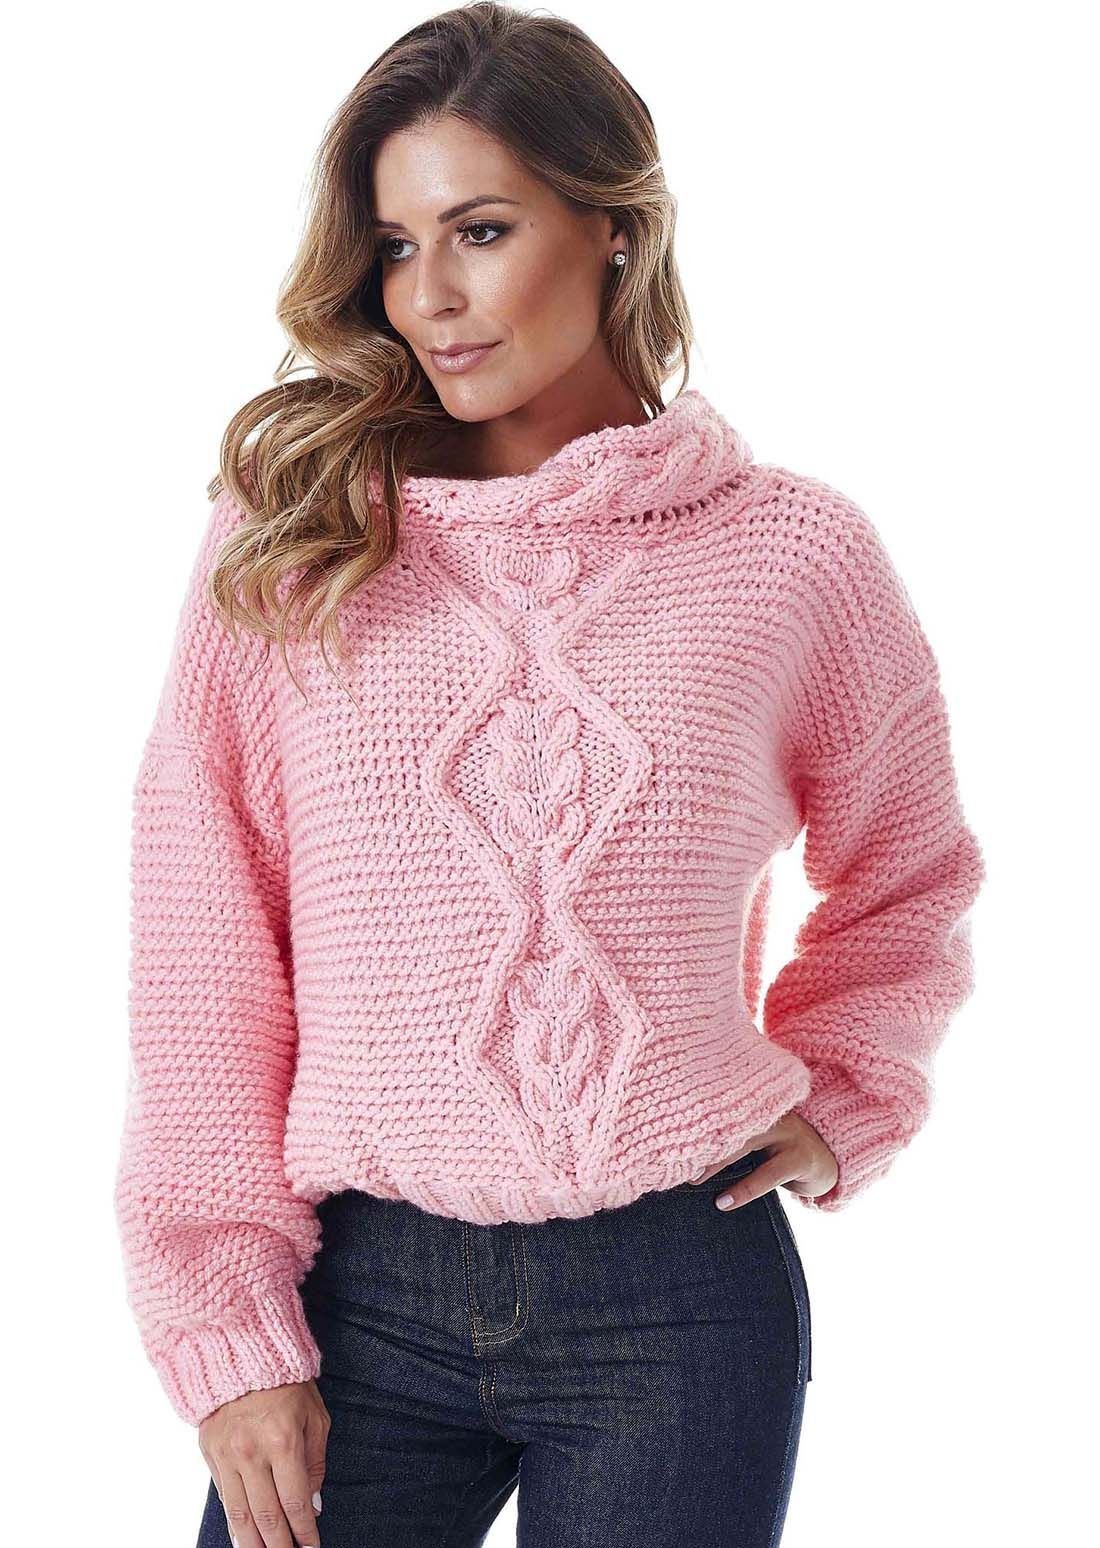 Джемпер кофта женская. Пуловер Basler пуловер. Вязаный свитер. Красивые свитера для женщин. Вязаные кофты женские.